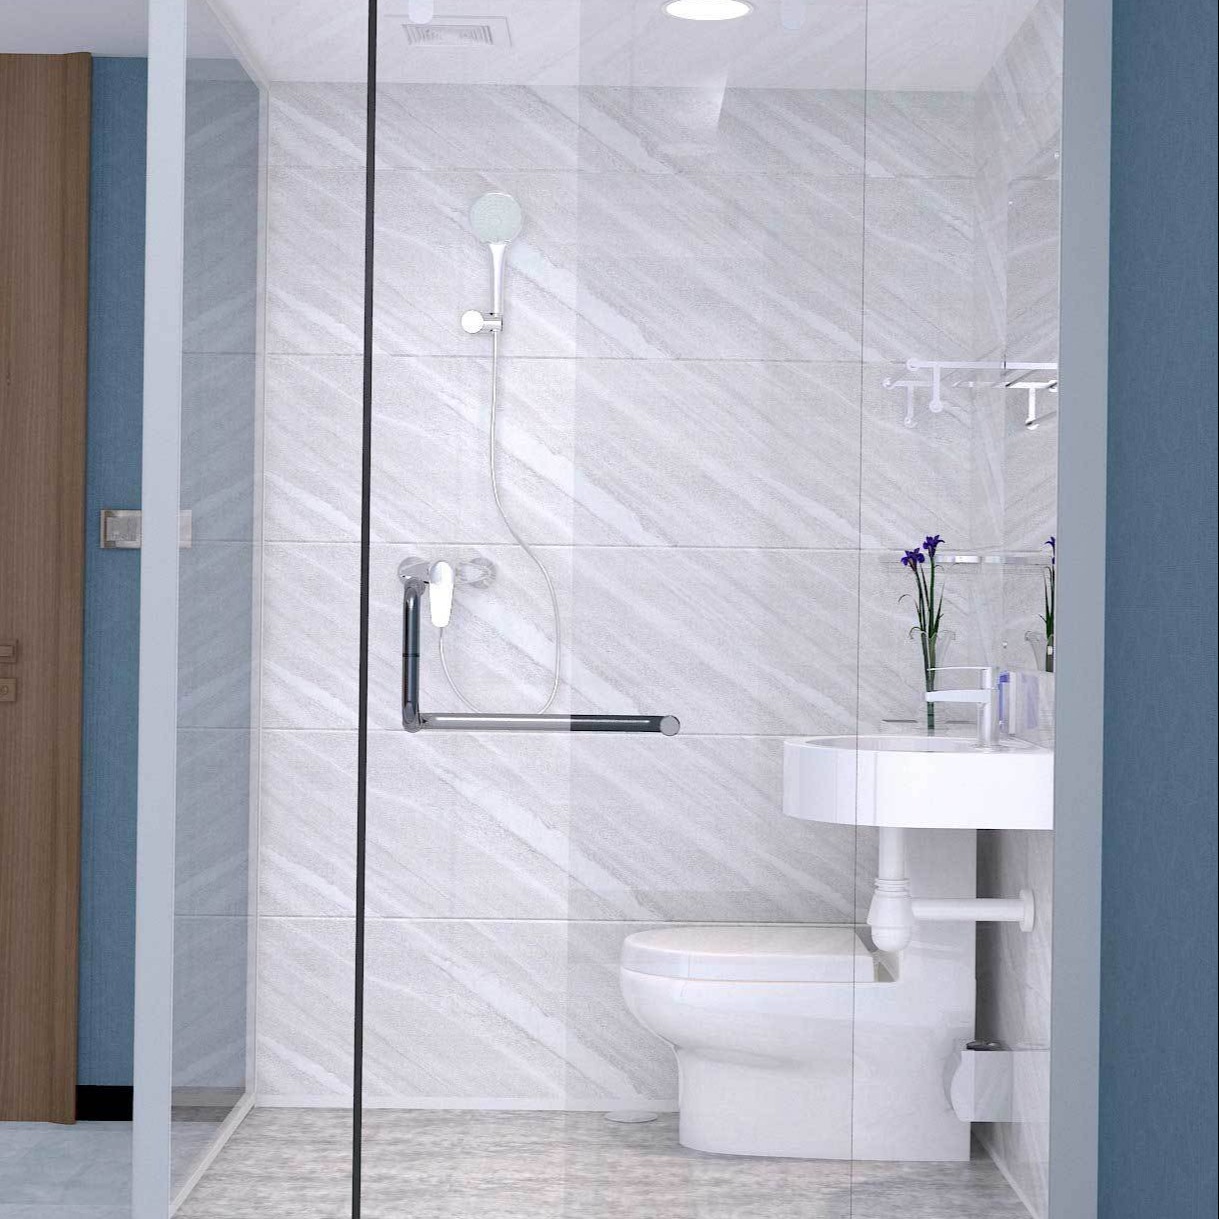 百思沐整体卫生间BLS1115 厂家直供整体卫浴 批发定制整体浴室 集成卫生间